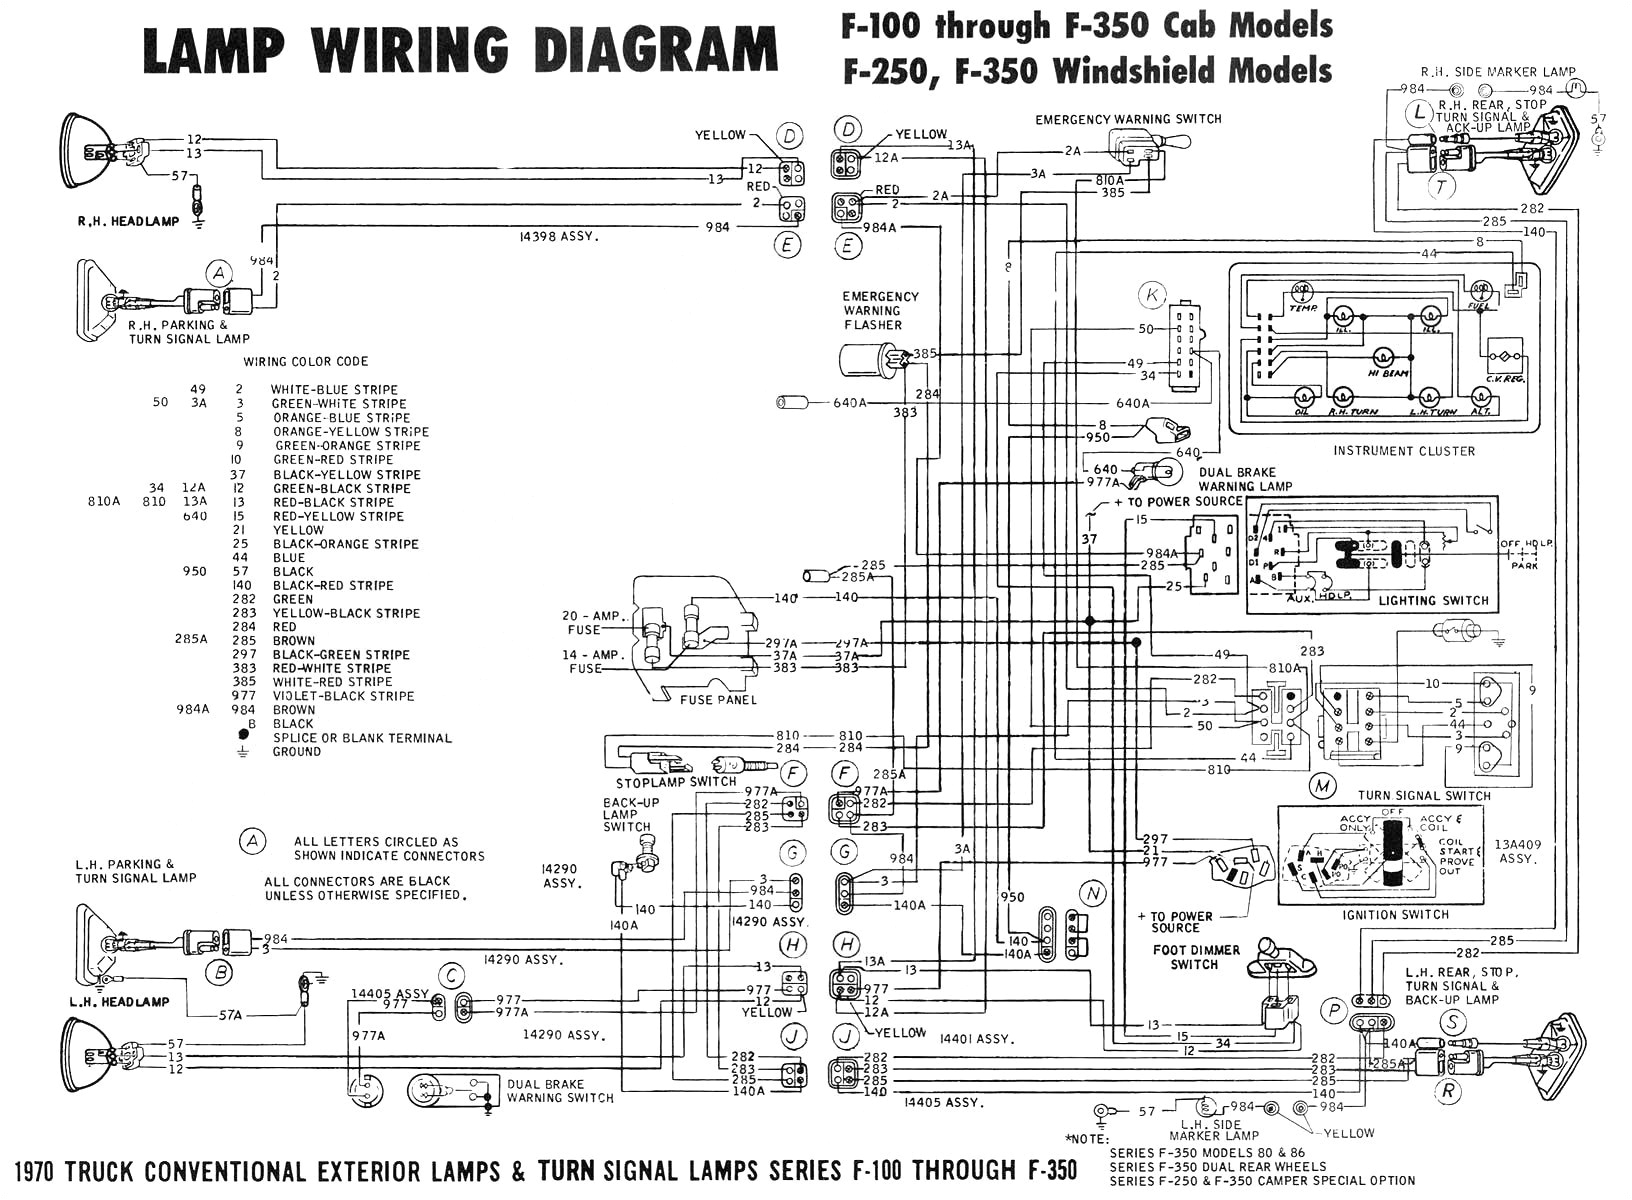 schematic wiring diagram ach 800 wiring diagram post ach wiring diagram model 8